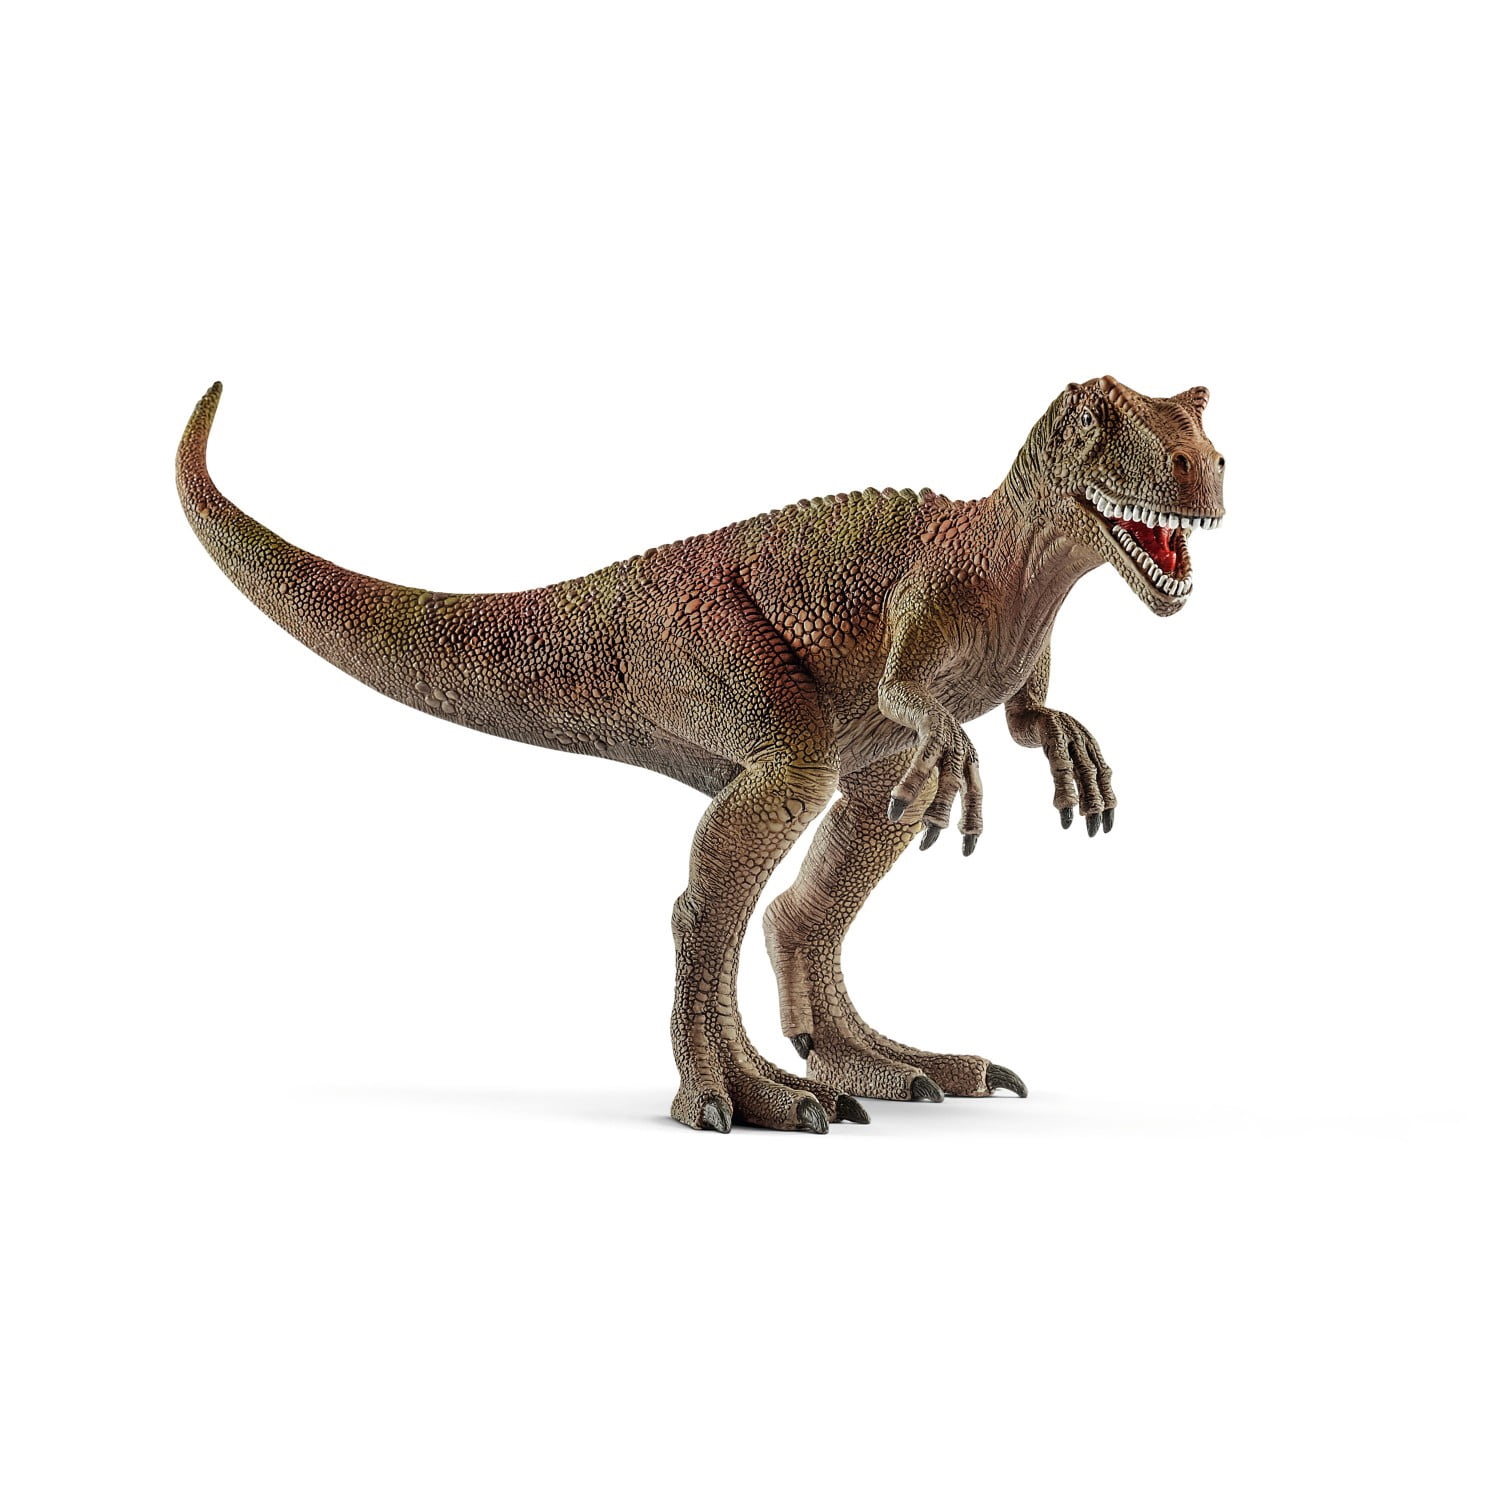 Schleich North America Herrerasaurus Toy Figure 